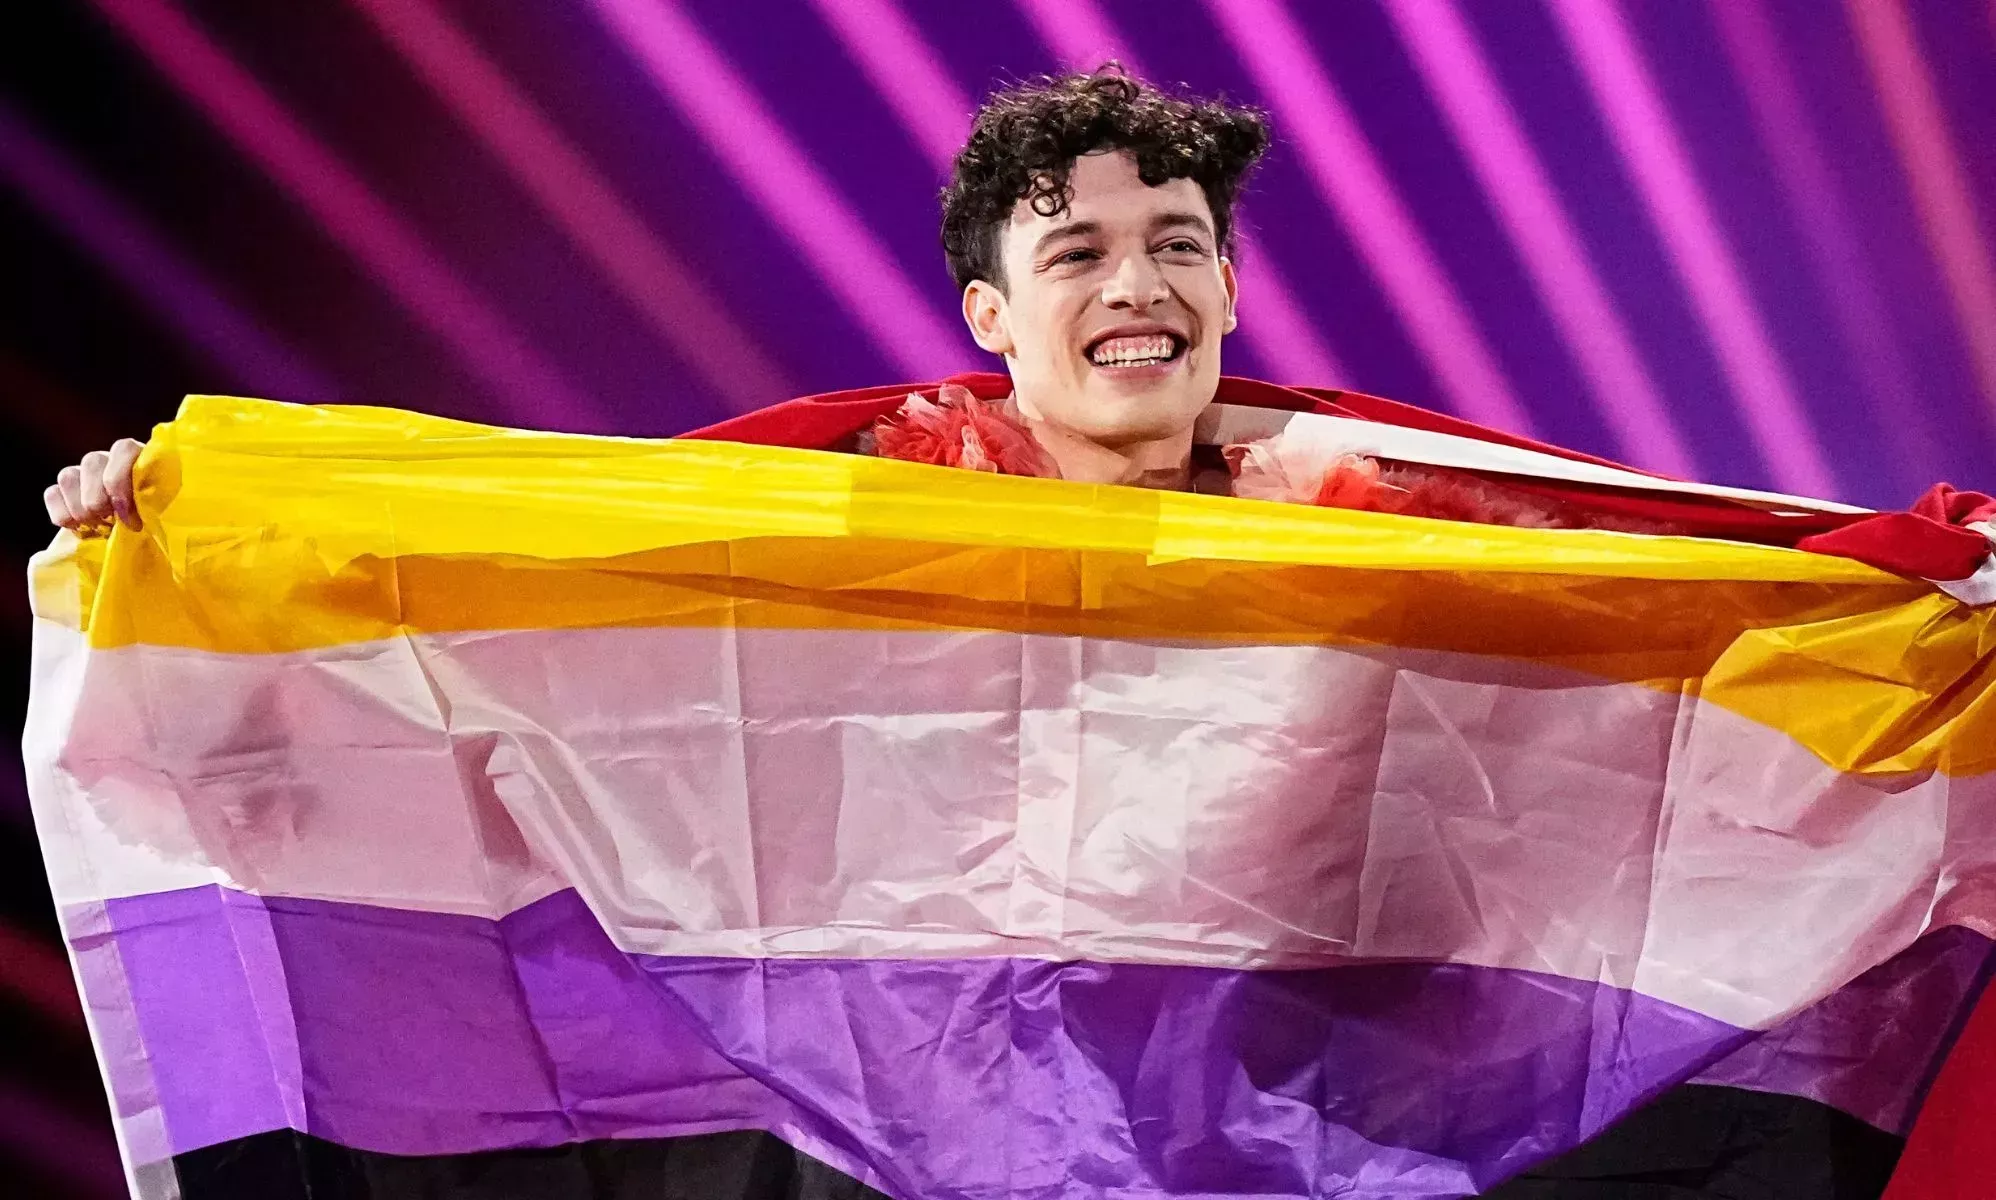 Nemo, ganador de Eurovisión, dice que la bandera no binaria no estaba permitida en la arena: 